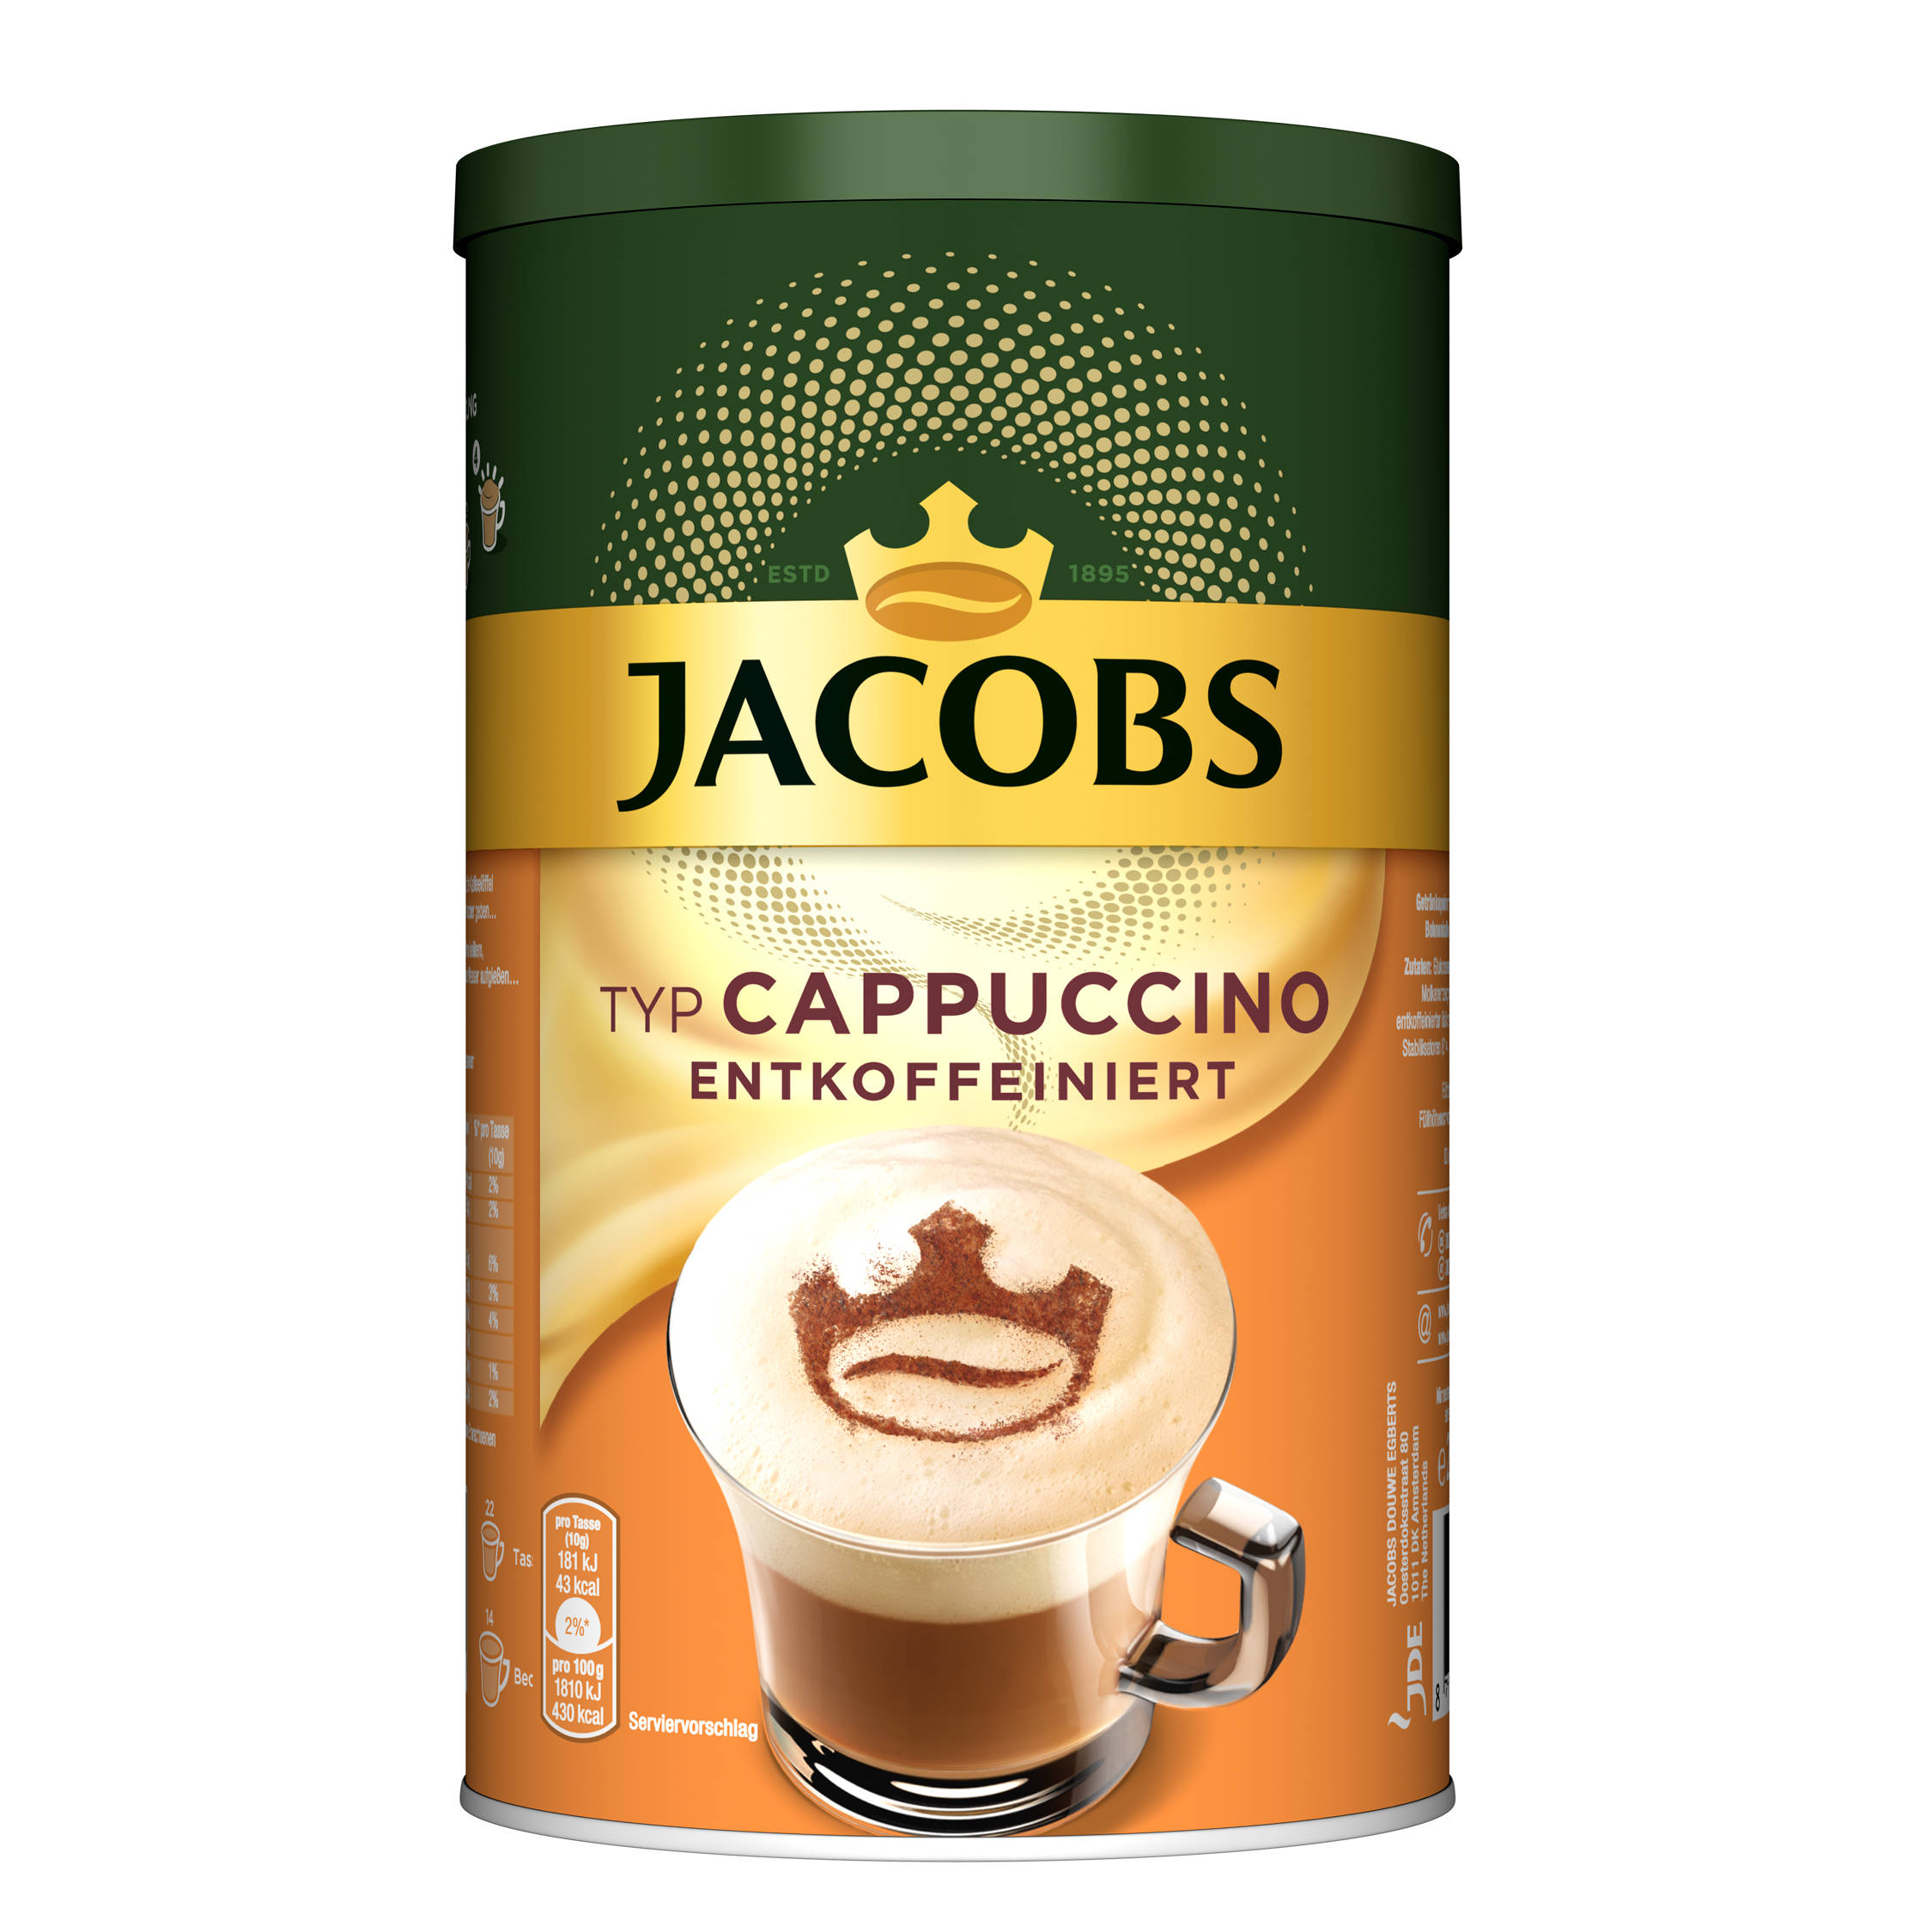 g 8 heißem auflösen) Cappuccino 220 JACOBS entkoffeiniert (In x Typ Instantkaffee Wasser Dosen